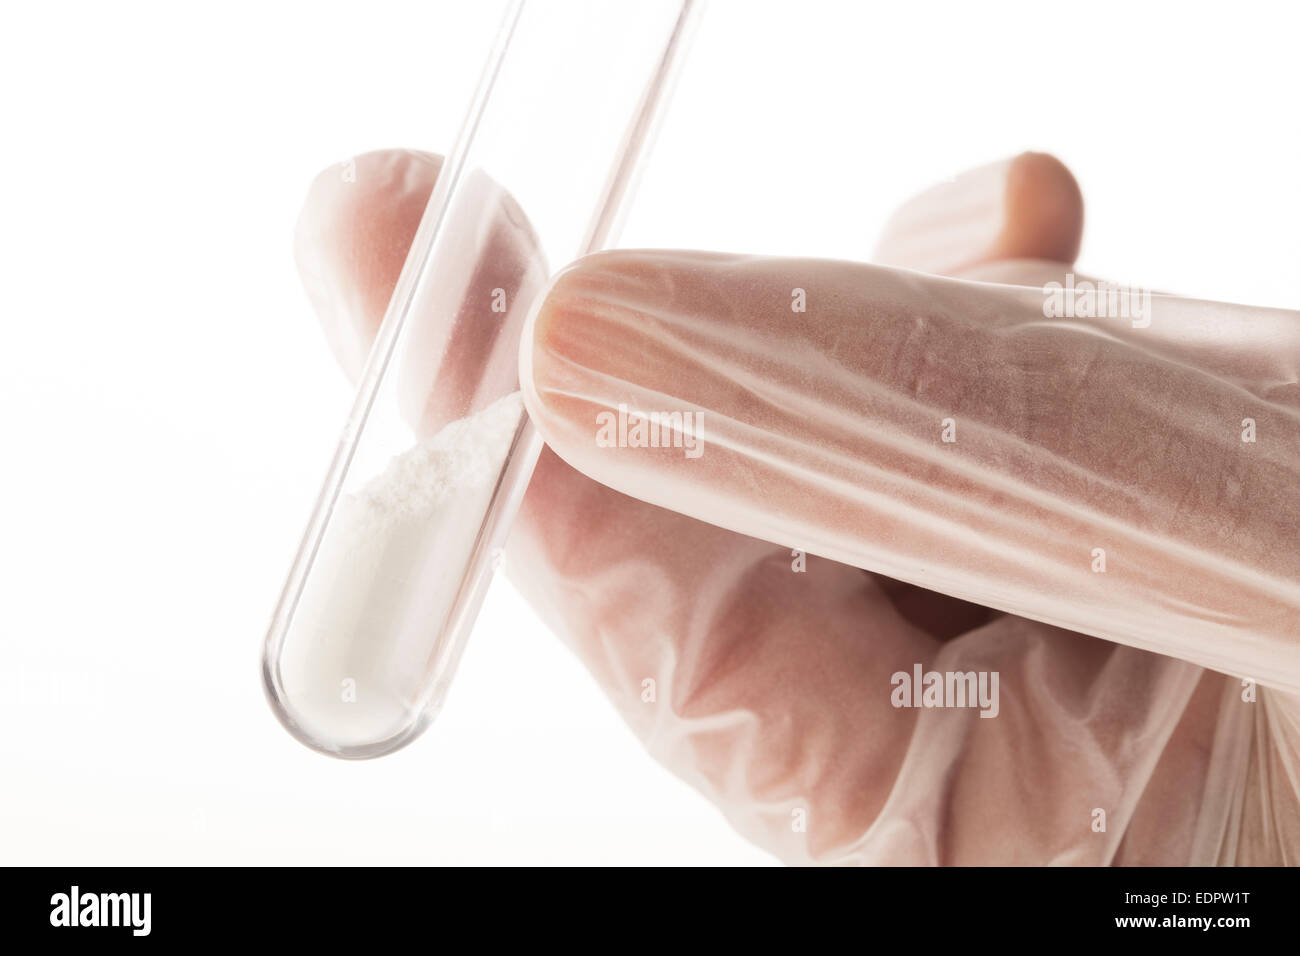 Weißes Pulver im Reagenzglas statt mit den Fingern in Latex-Handschuhen. Stockfoto